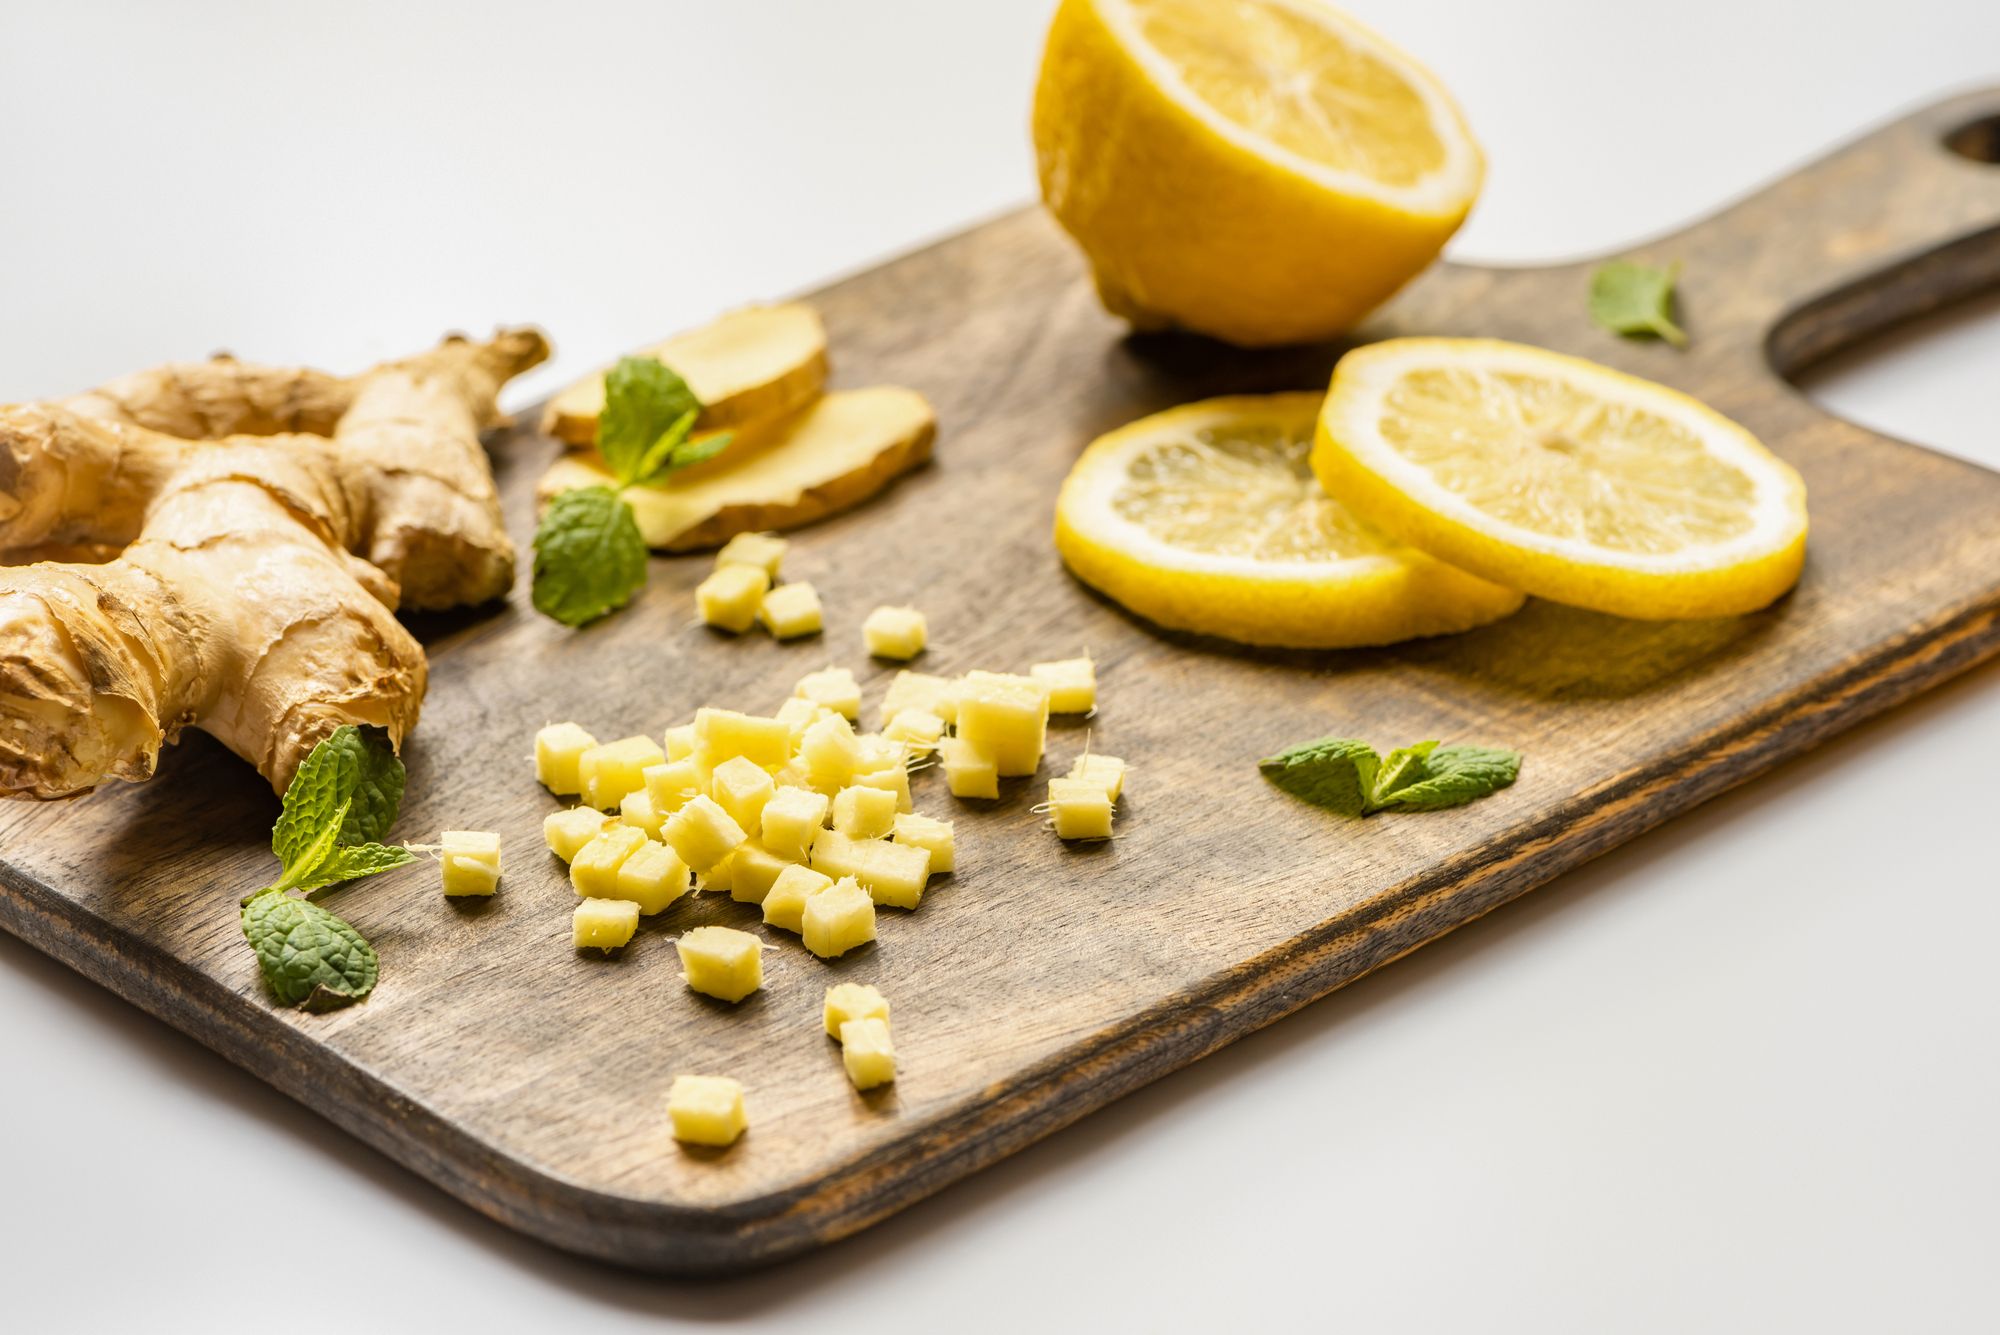 وصفة الزنجبيل والليمون لتصغير الأنف منزلياً